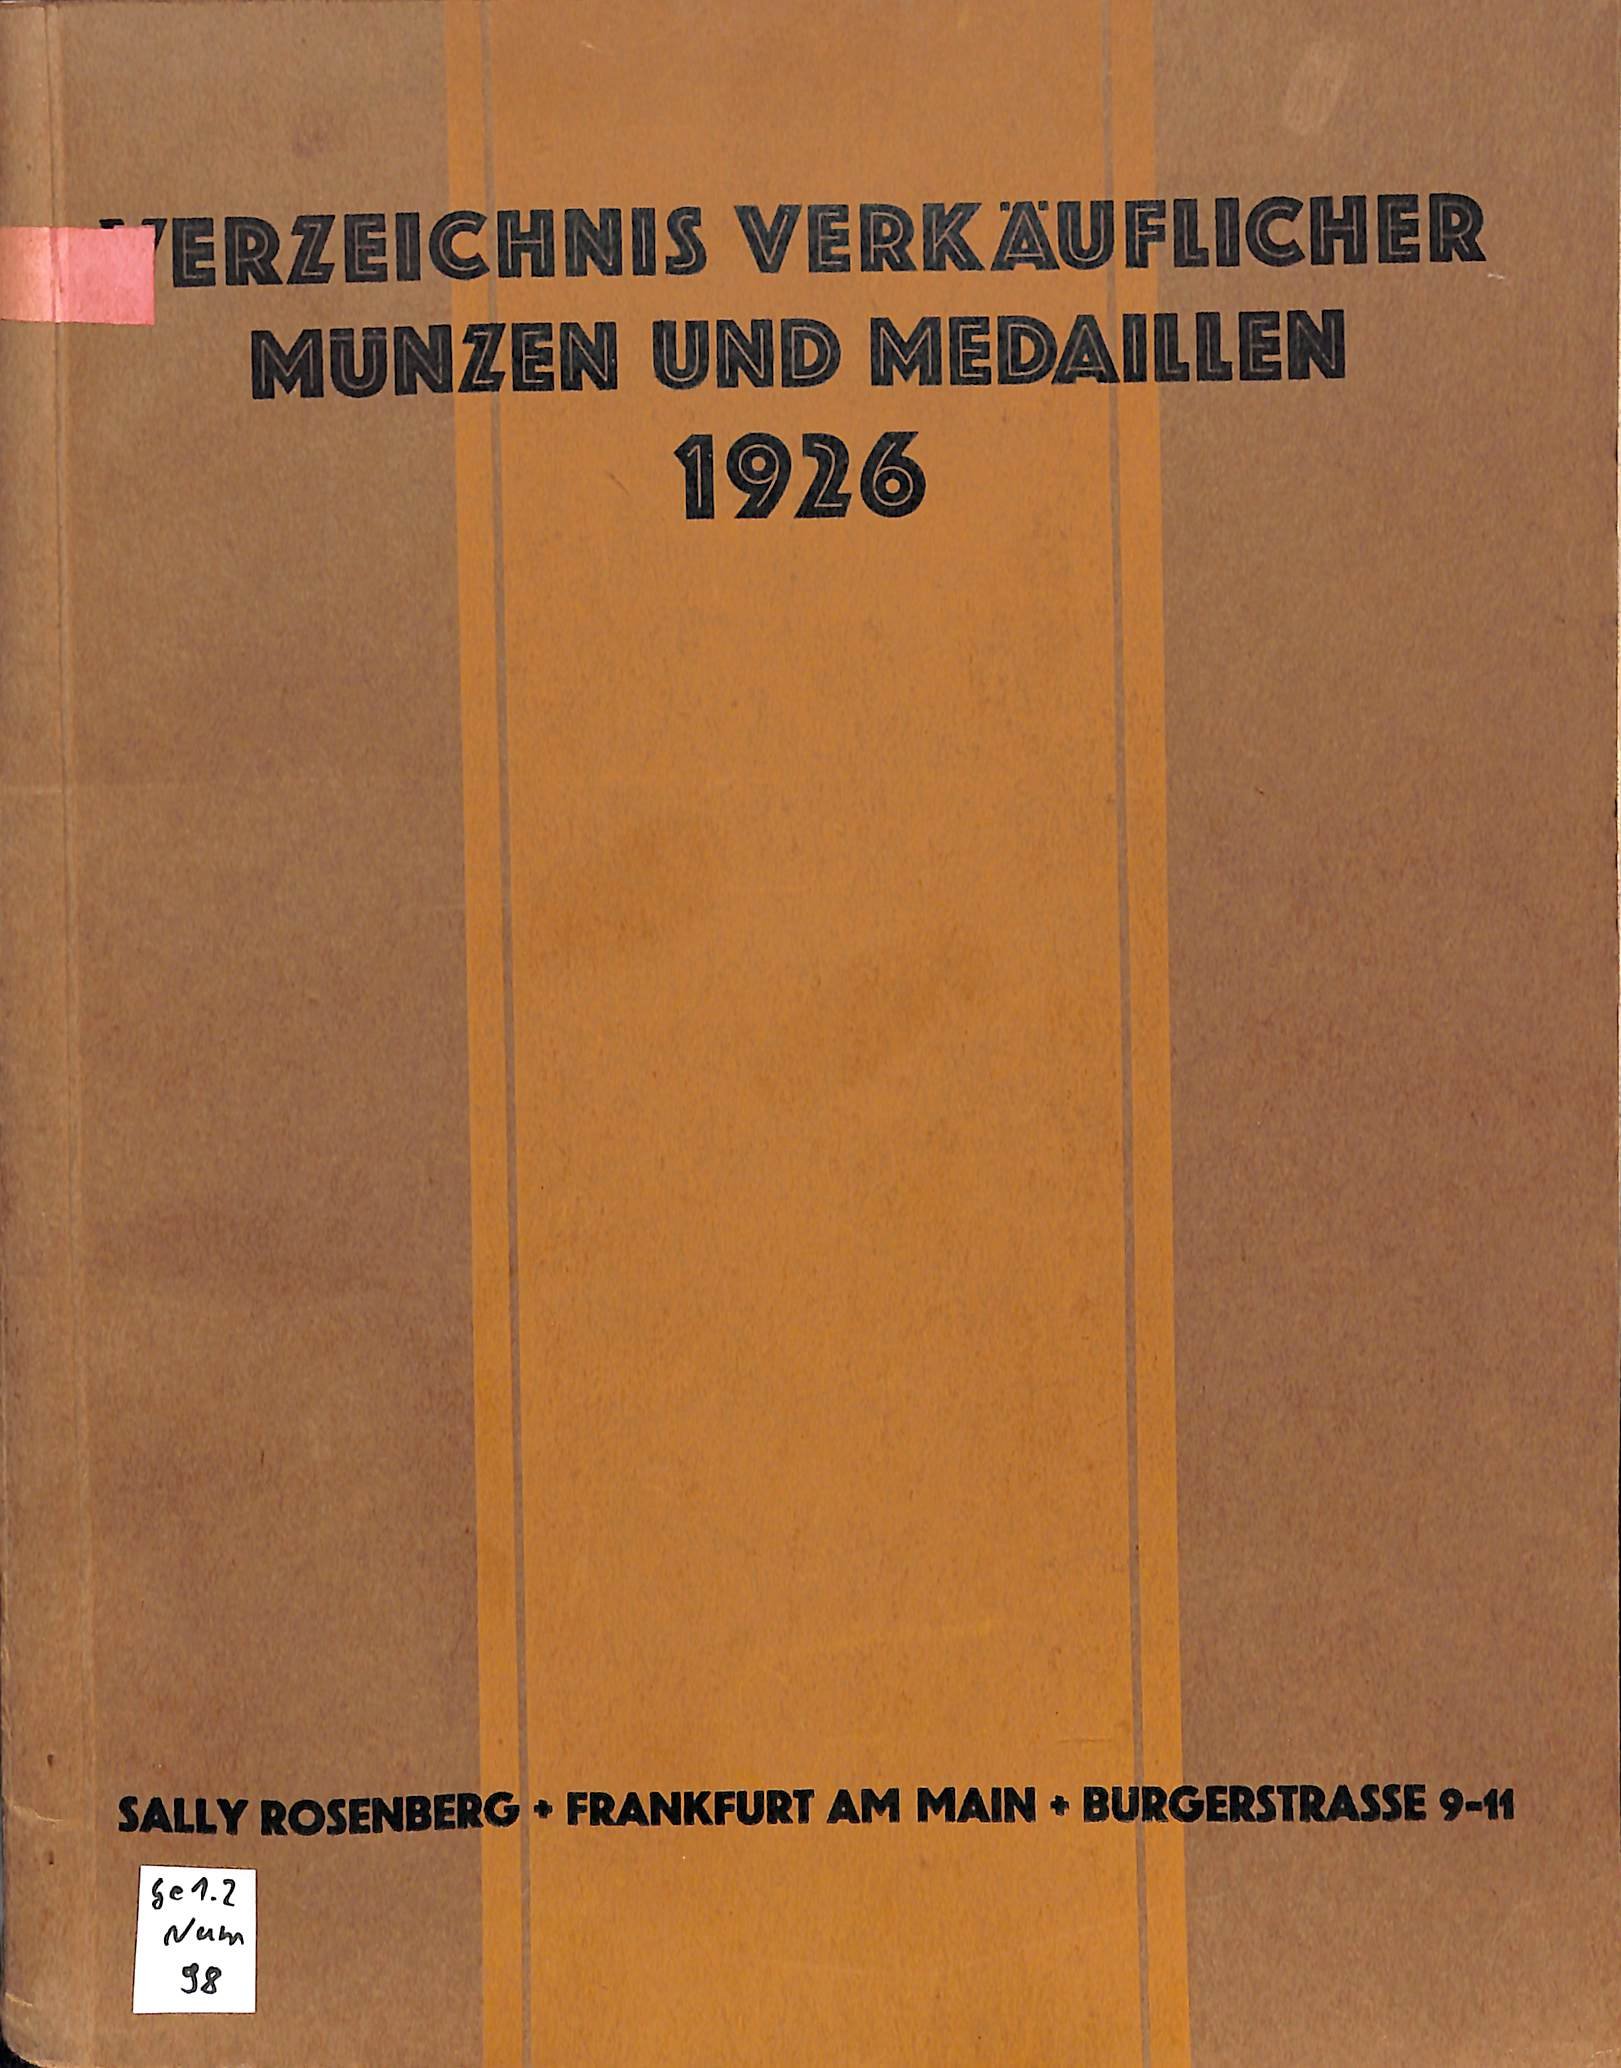 Sally Rosenberg, Verzeichnis verkäuflicher Münzen 1926 (Heimatwelten Zwönitz CC BY-NC-SA)